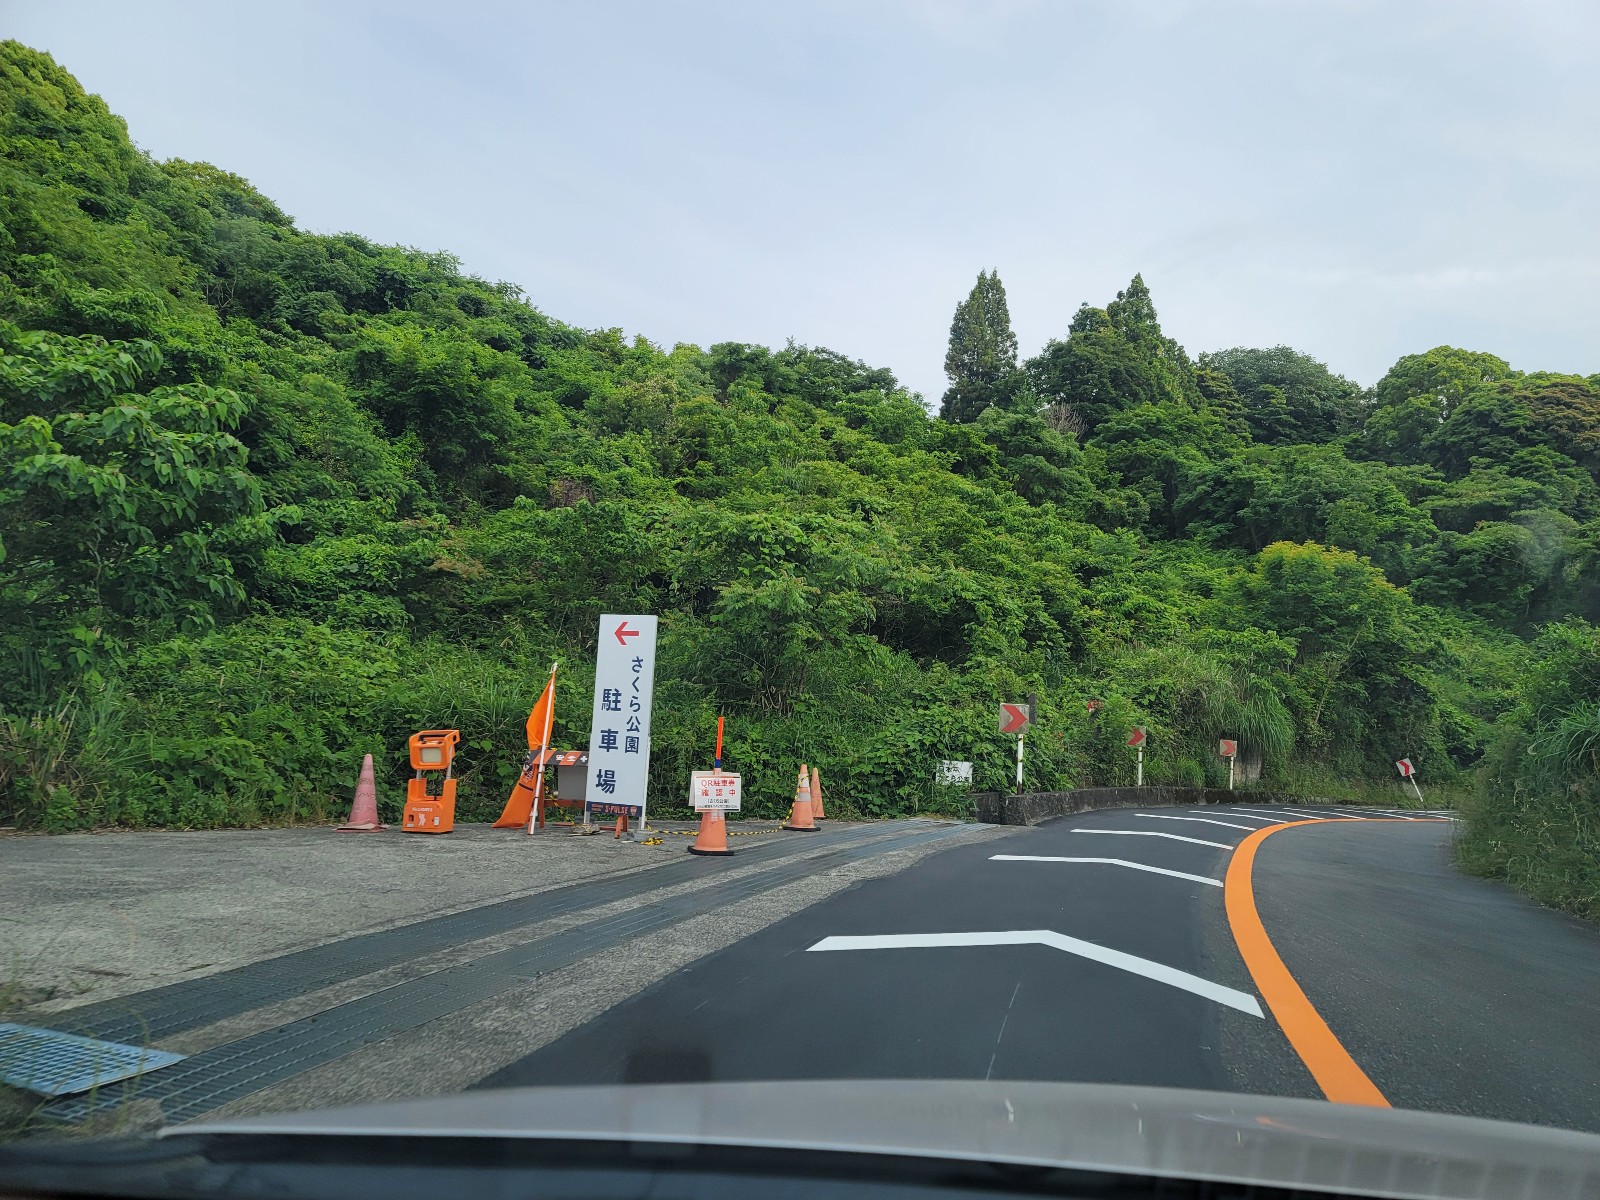 Iaiスタジアム日本平 車 バス どっち お得なアクセス 体験記 鹿好きサポーターのブログ